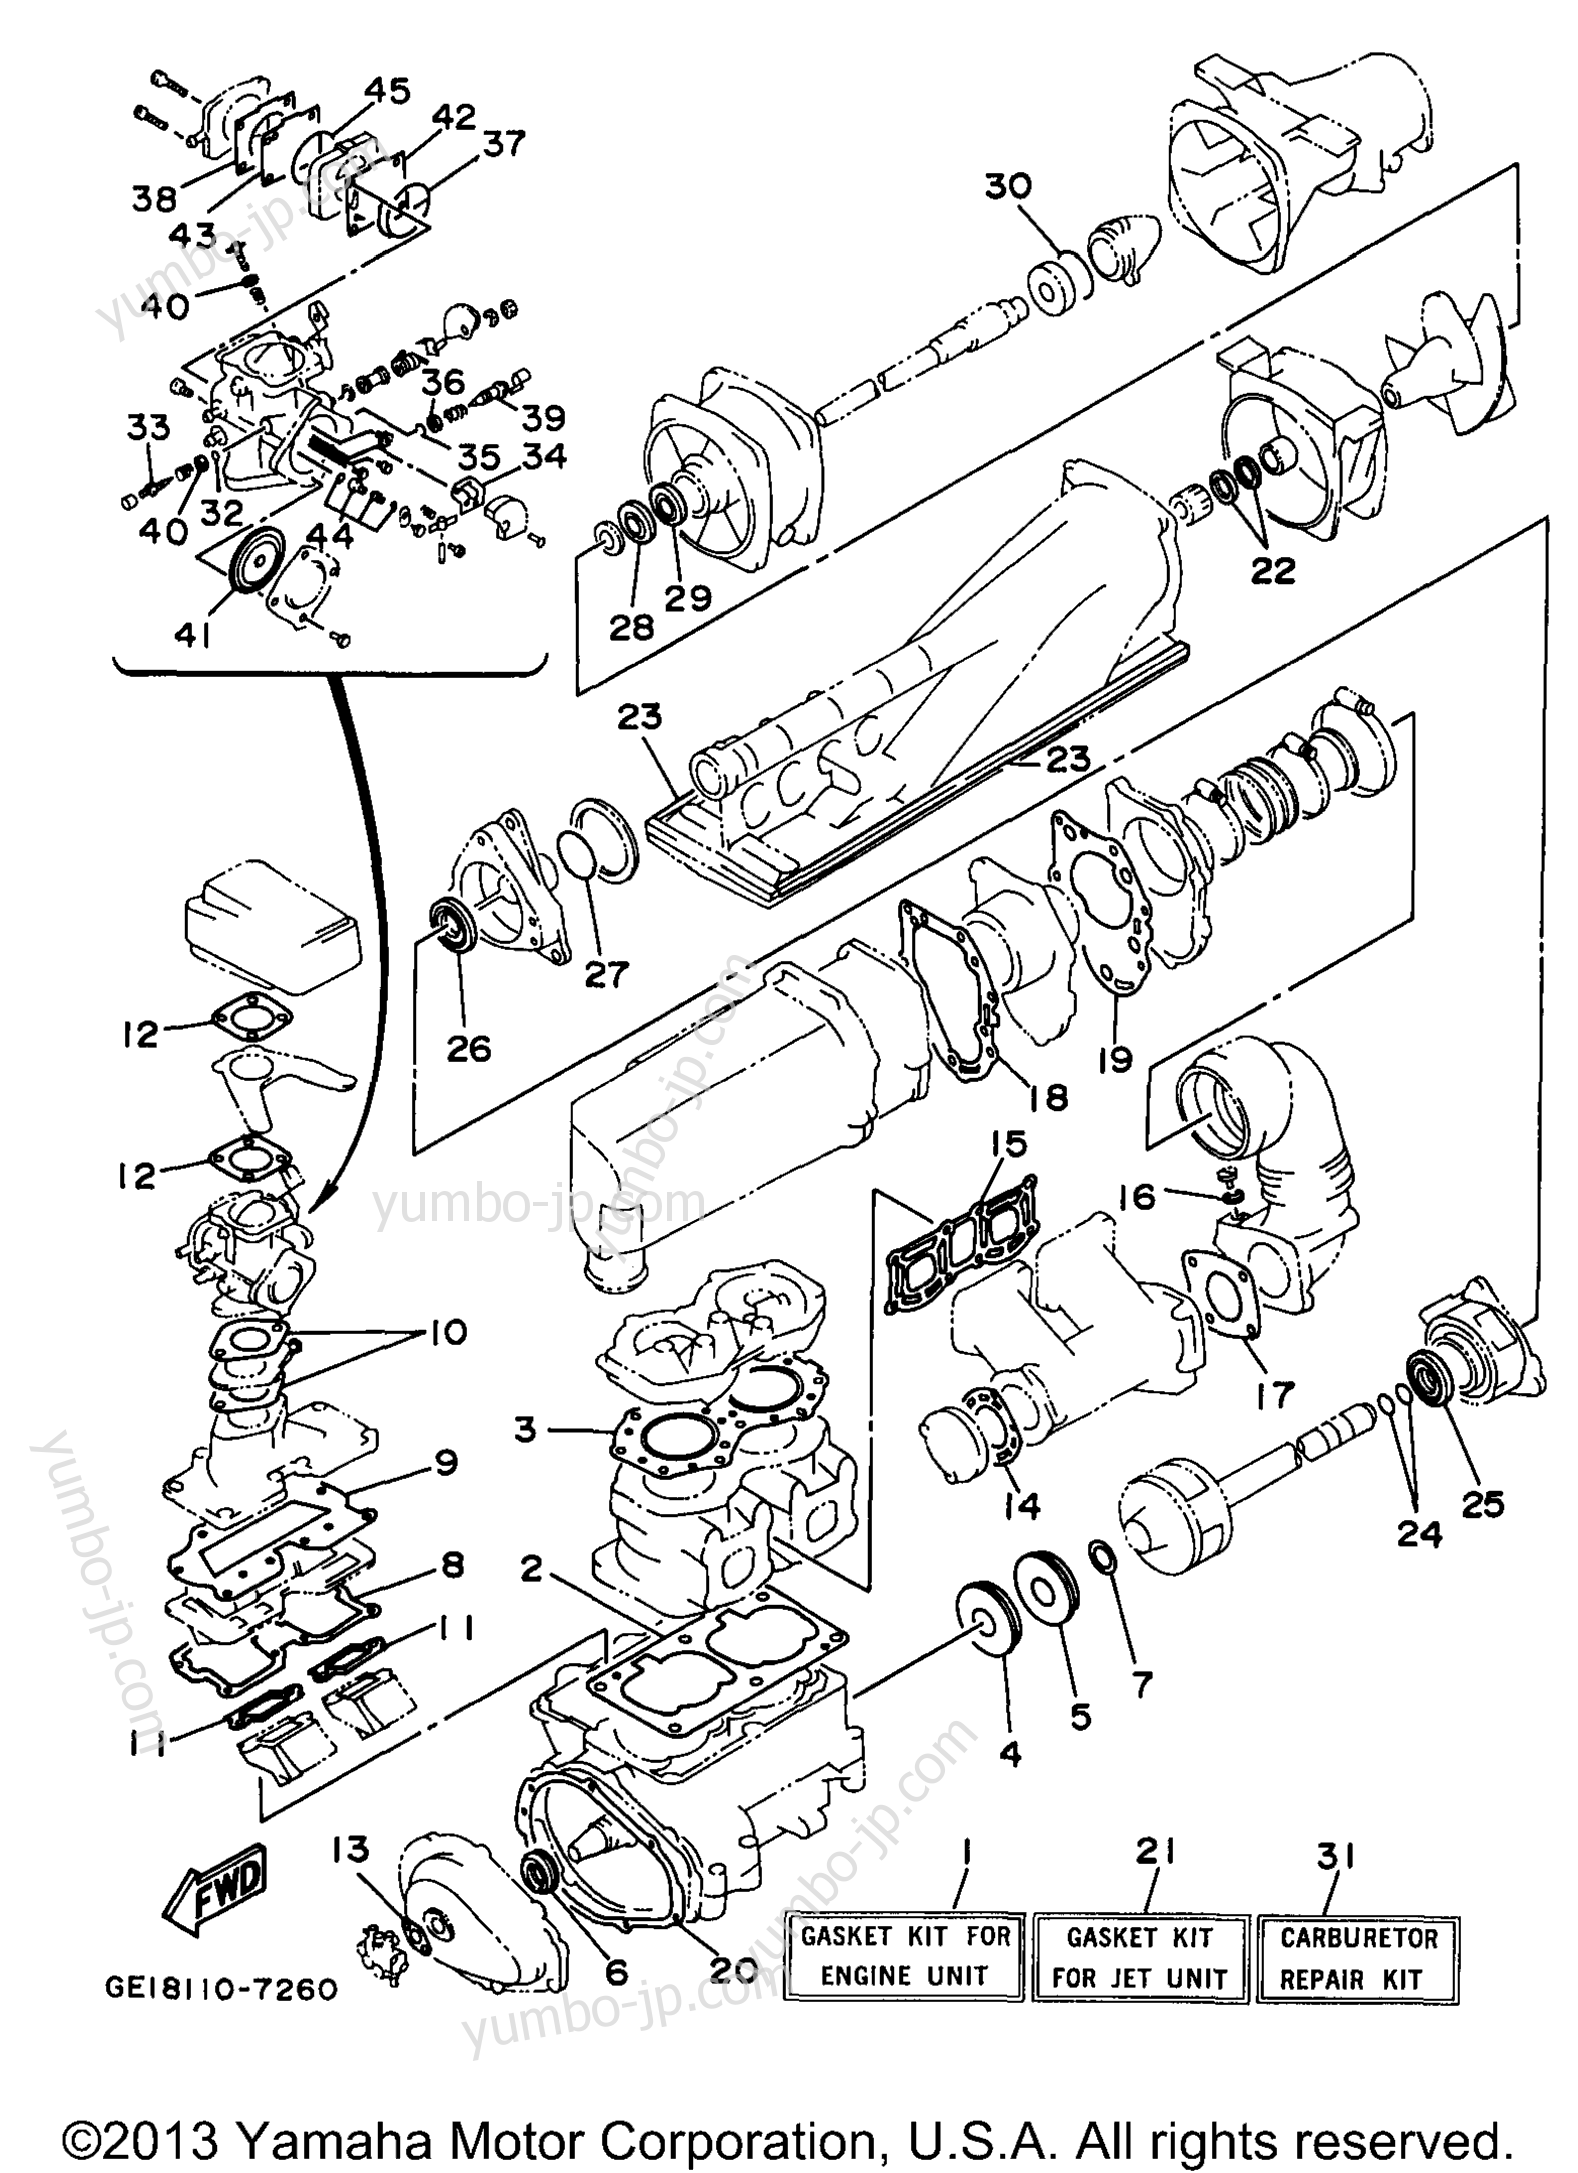 Ремкомплект / Набор прокладок для гидроциклов YAMAHA WAVE RUNNER III (WRA700V) 1997 г.